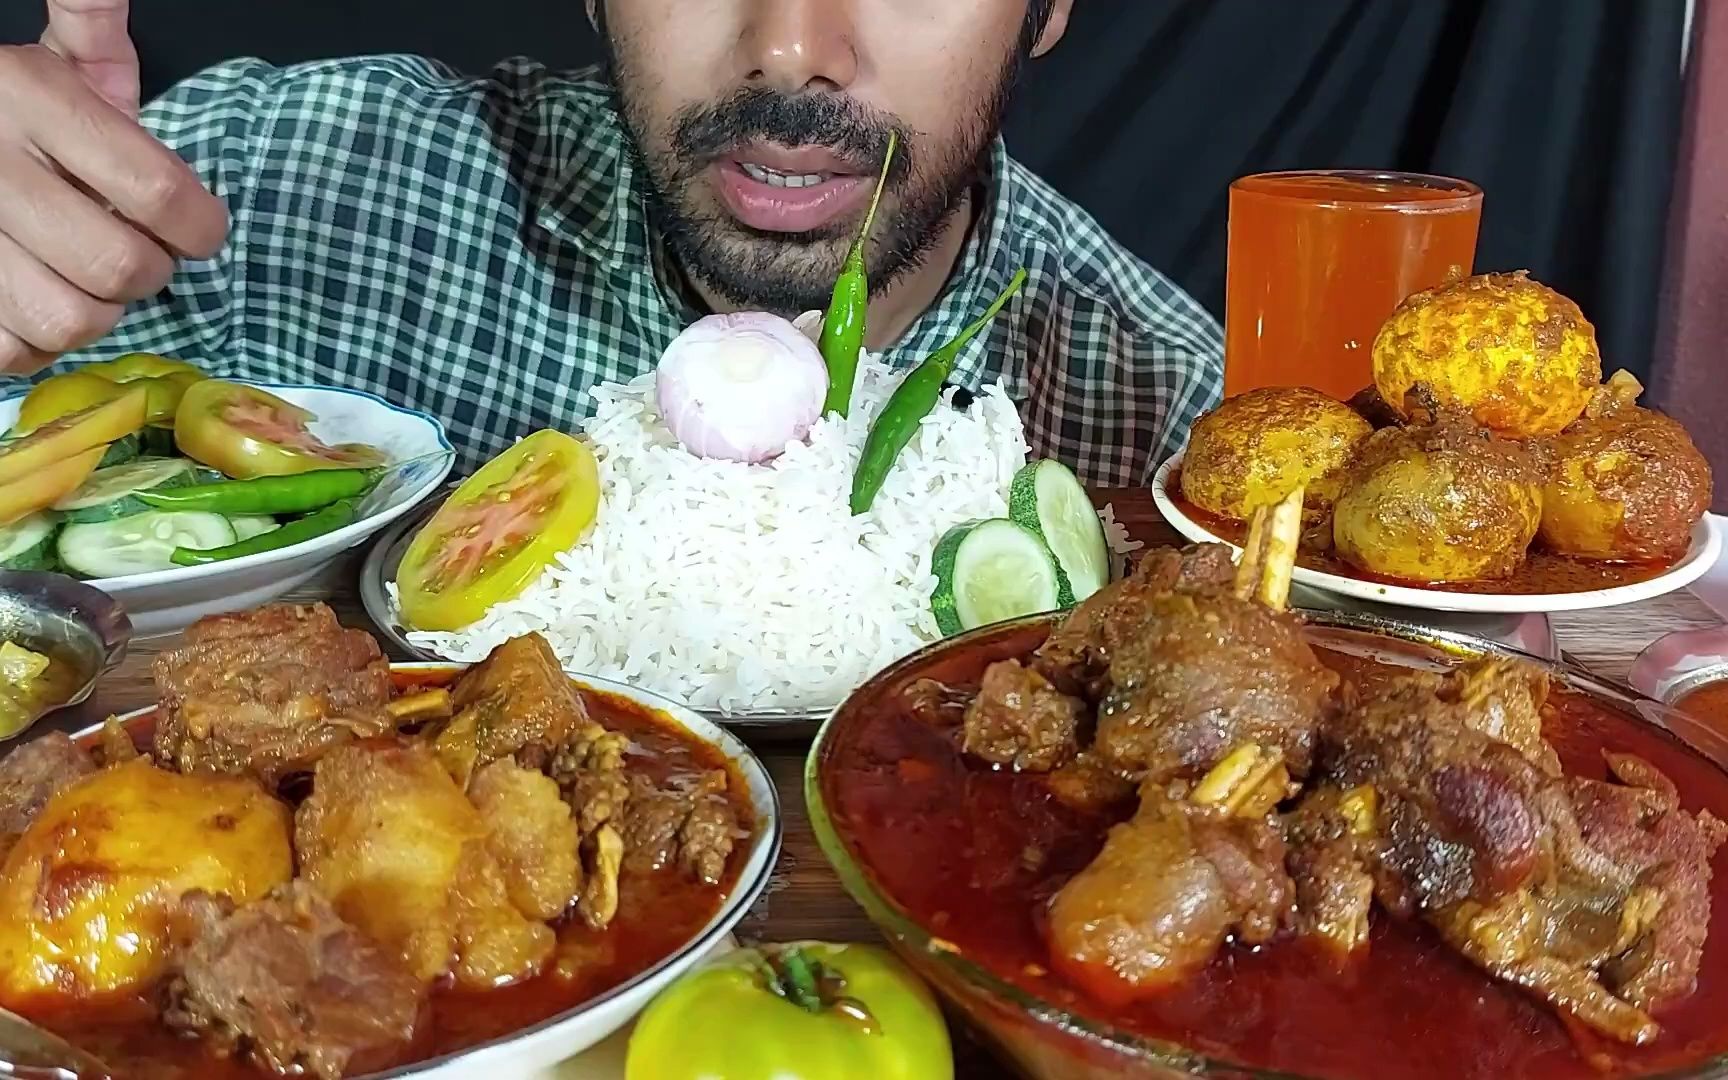 【孟加拉桶哥】看到辣椒插在米饭上就觉得这一餐不一般，轻松拿下。